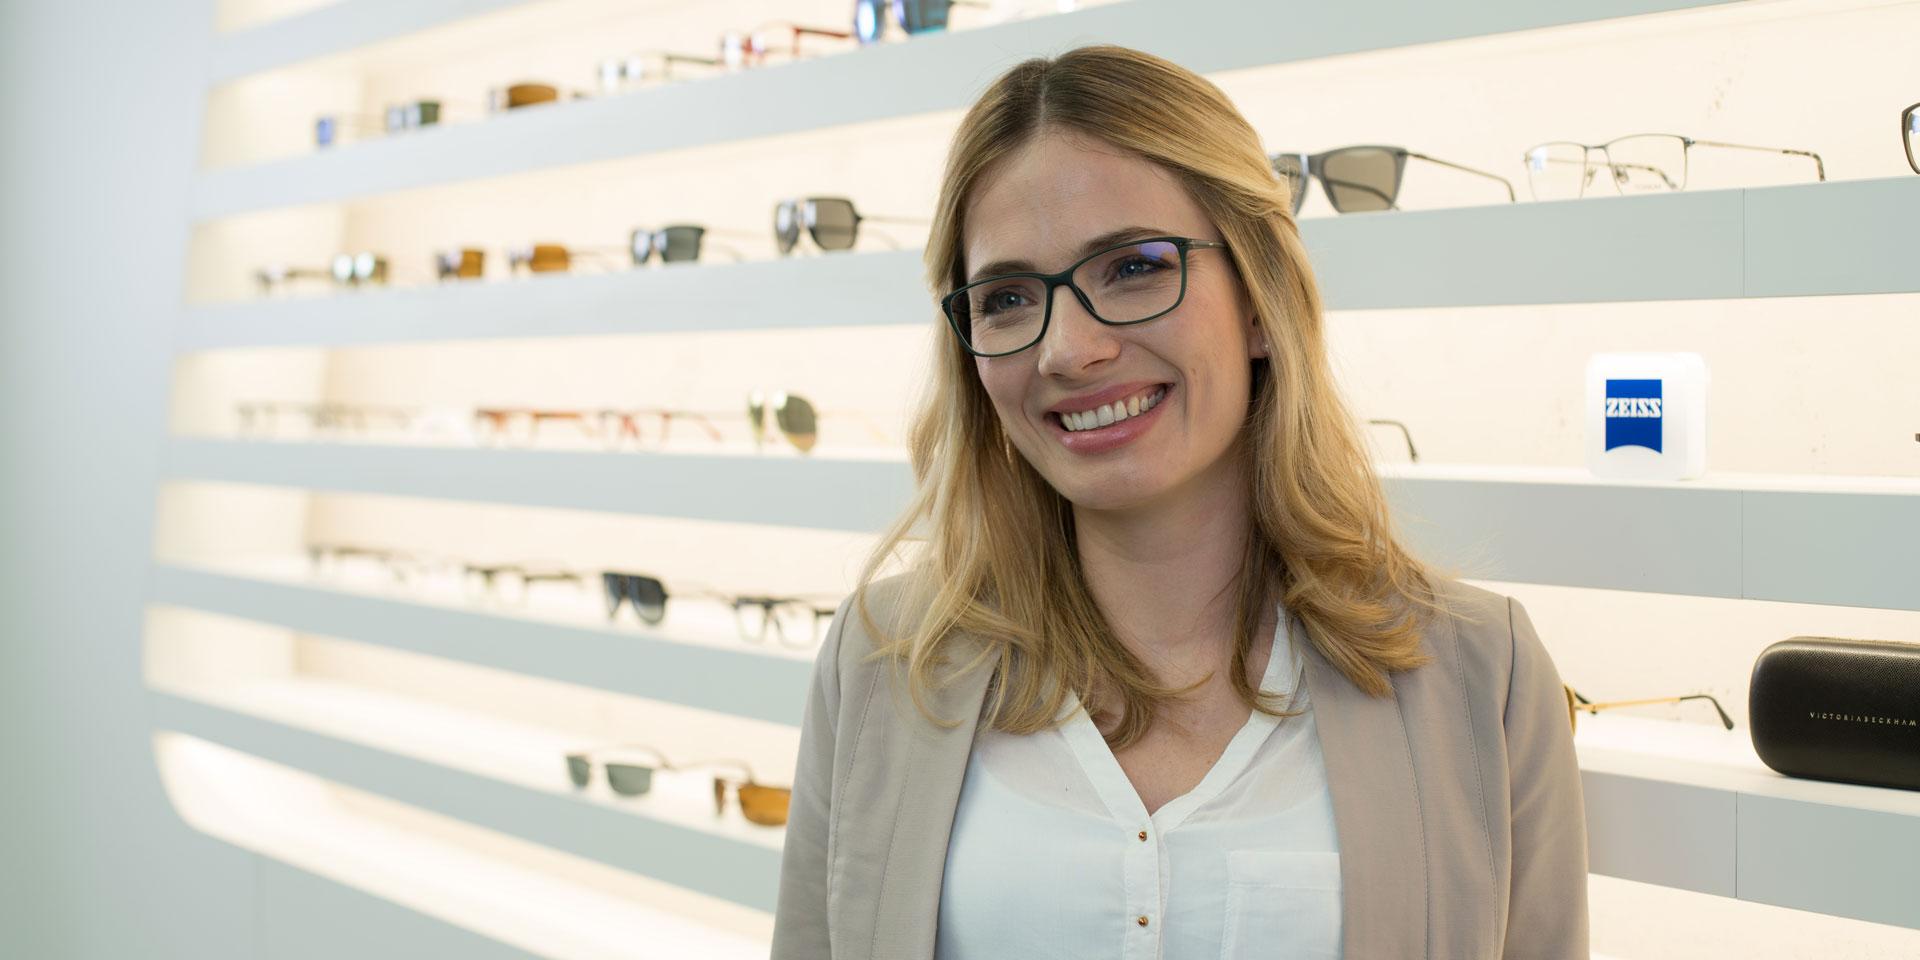 Consigli per l'acquisto di occhiali: come trovare quelli giusti